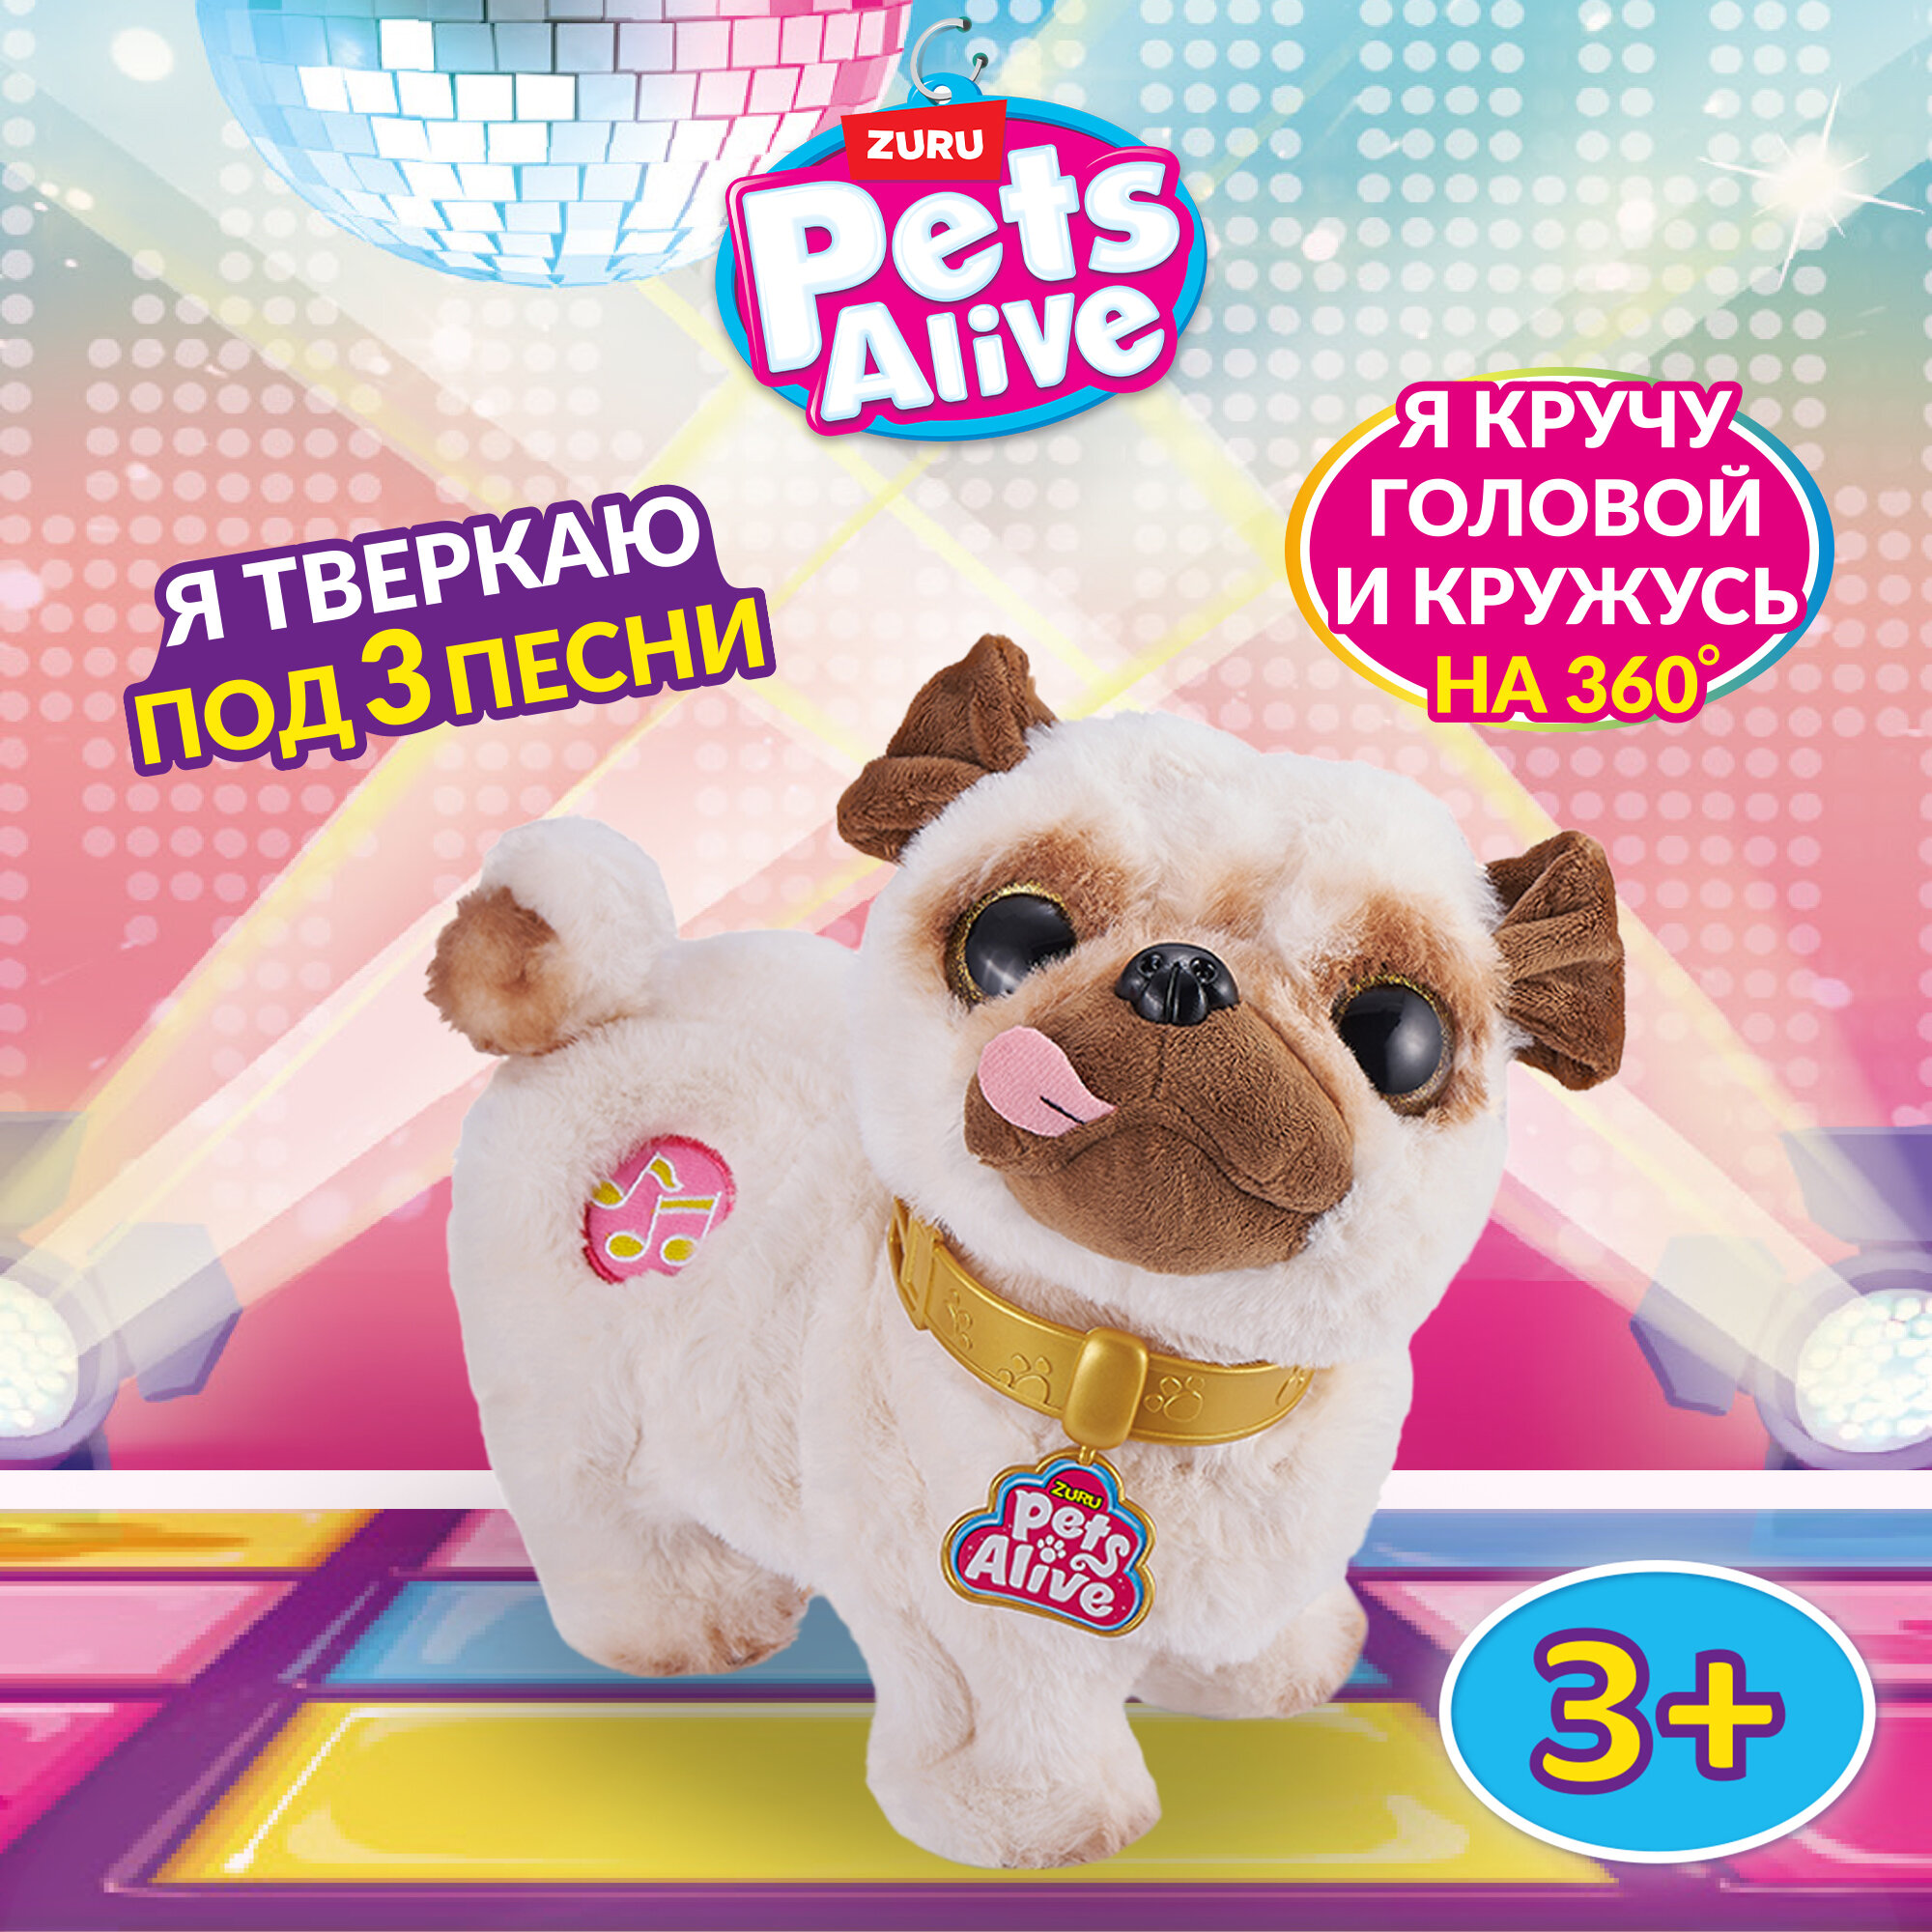 Интерактивная мягкая игрушка ZURU Pets Alive 9516/9521/9522